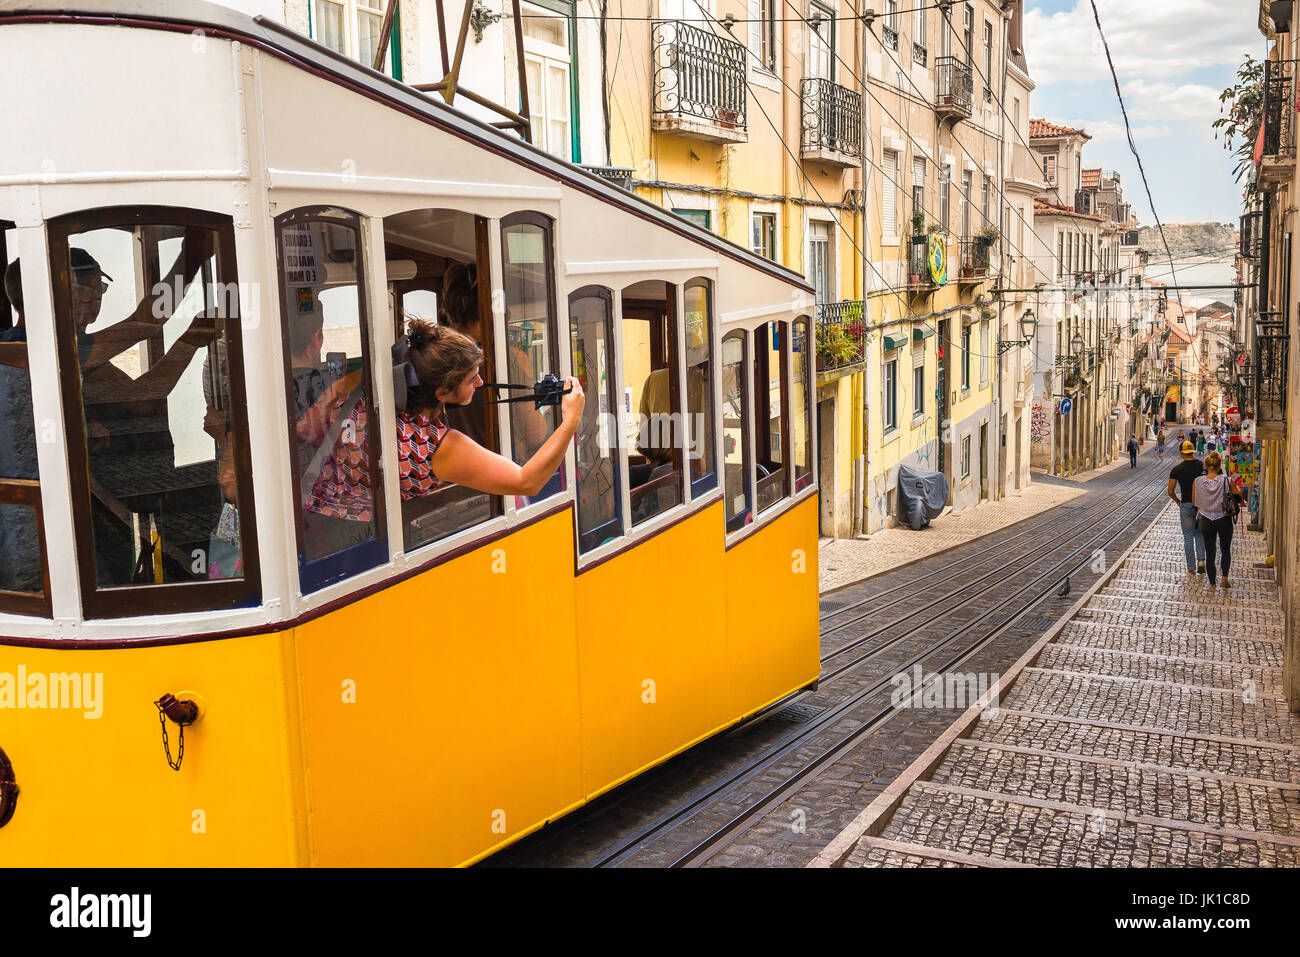 Lissabon Straßenbahn Touristen, lehnt sich ein Tourist aus einer Straßenbahn, der Abstieg von der Elevador da Bica in der Bairro Alto Gegend von Lissabon, Portugal zu fotografieren. Stockfoto